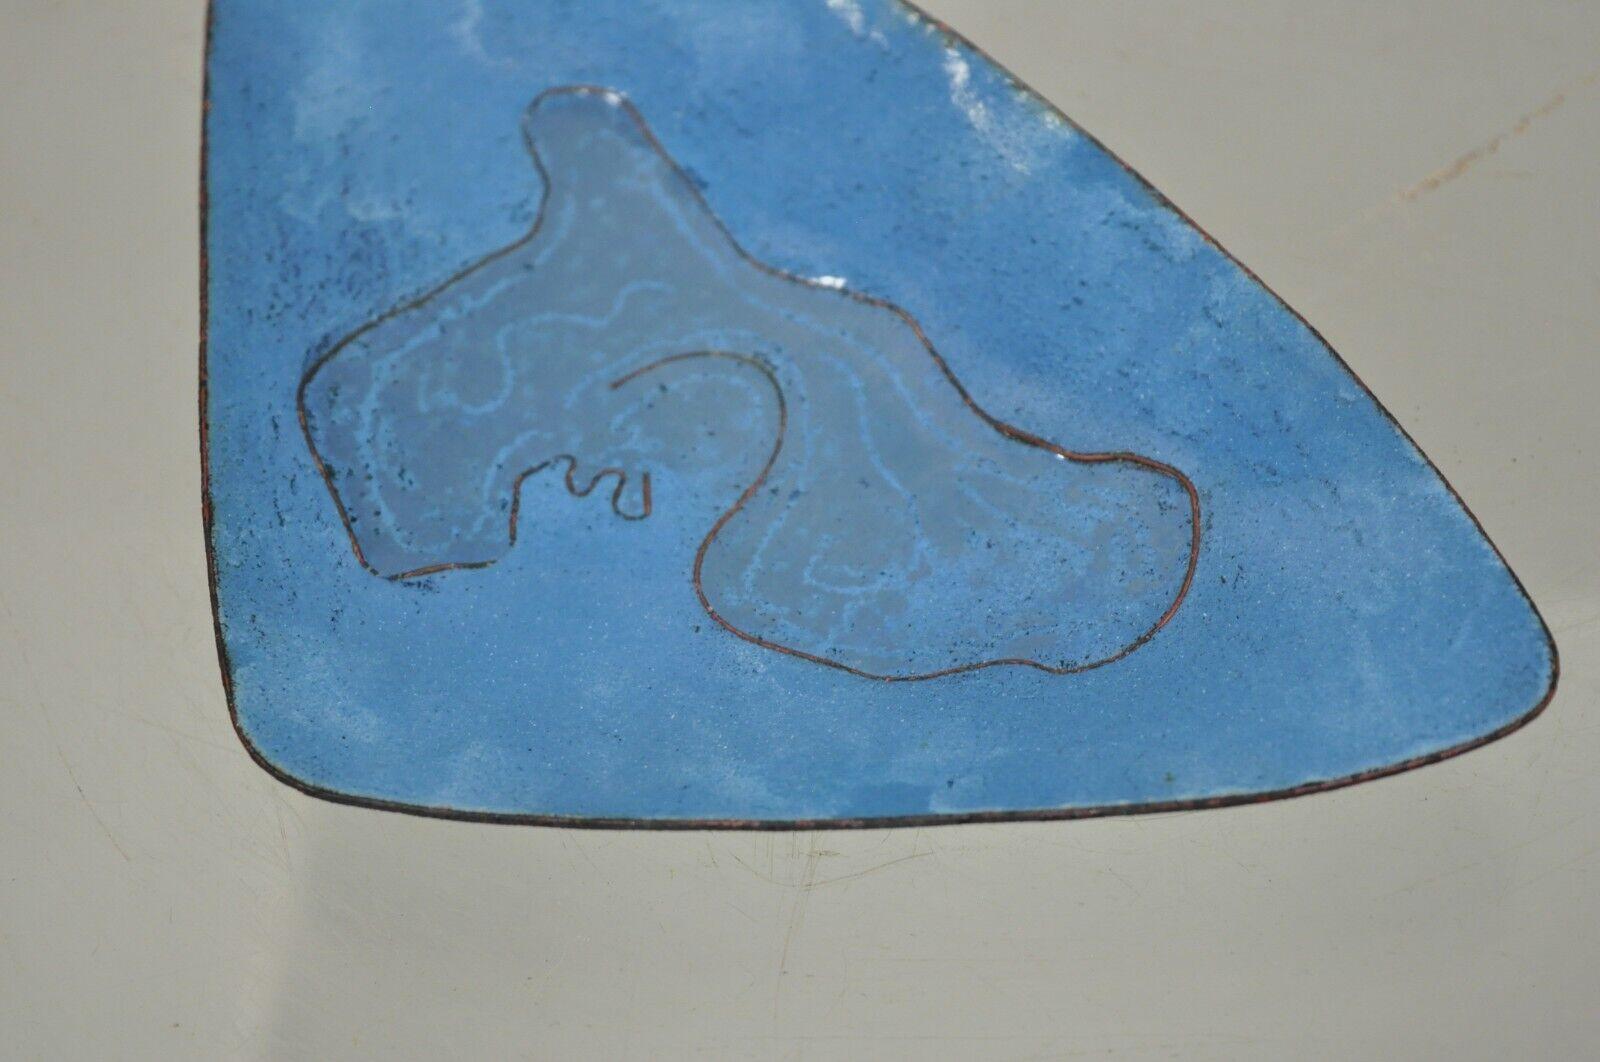 Dreieckige Mid-Century Modern-Trinkschale aus blauem Porzellan, Emaille und Kupfer, 20,3 cm (8